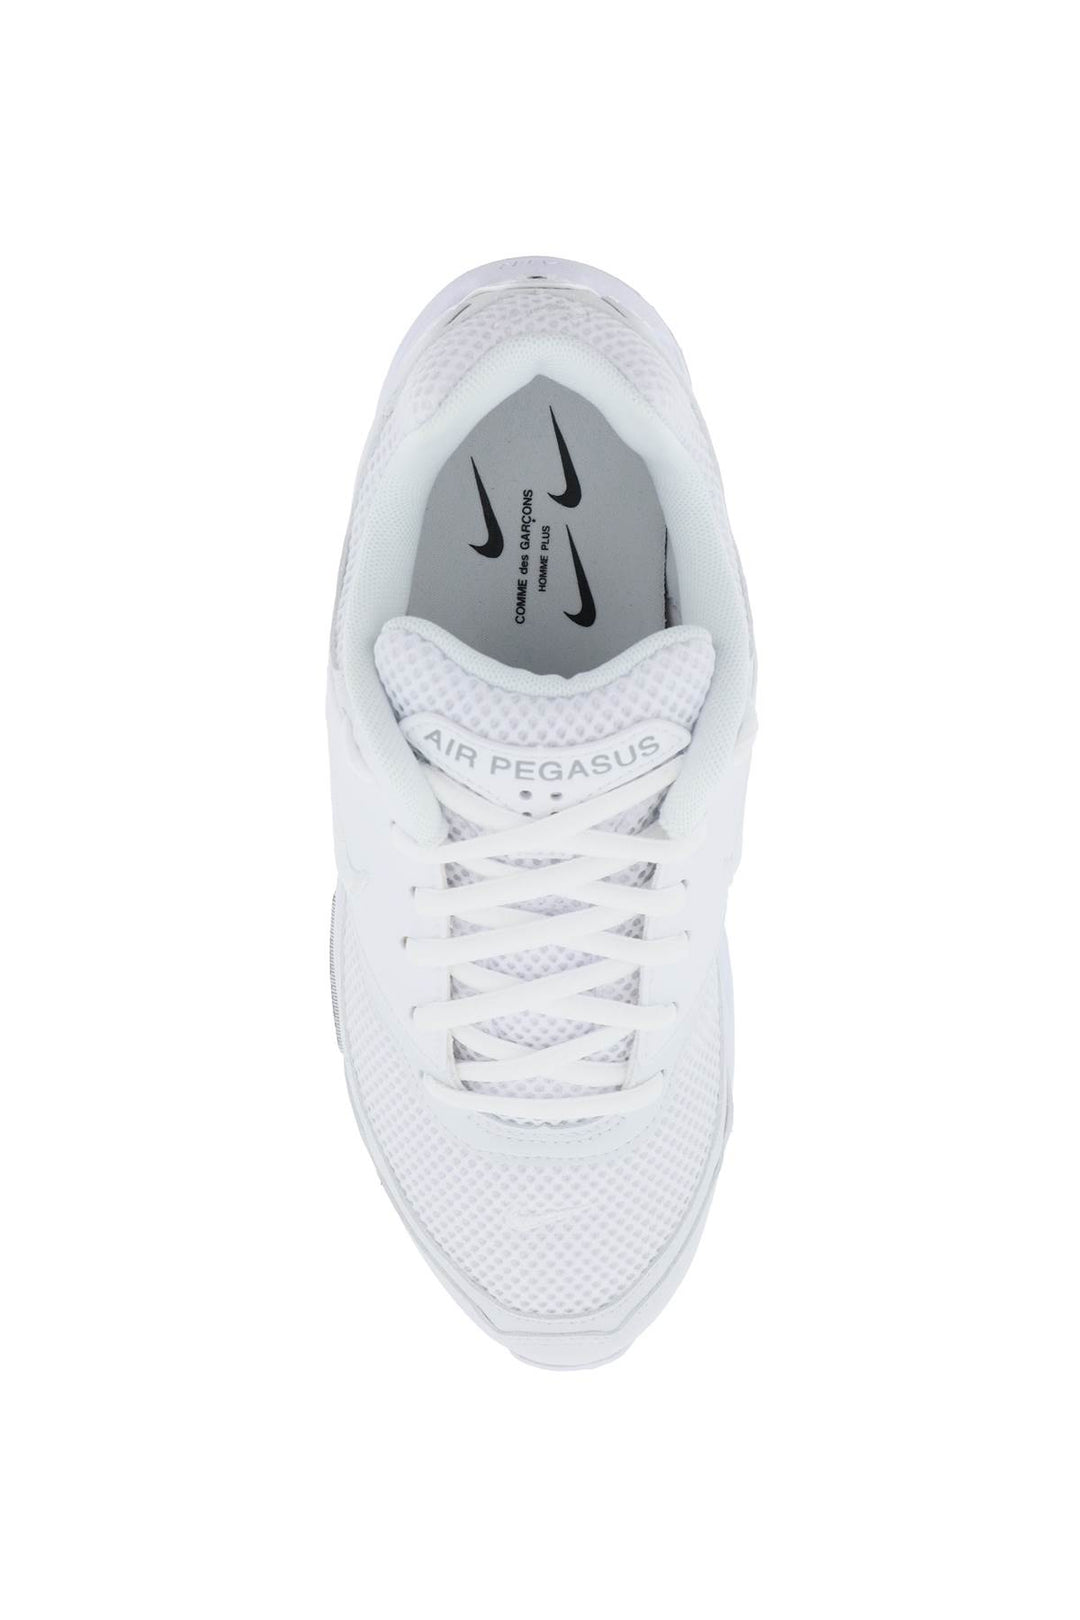 Comme Des Garcons Homme Plus Air Pegasus 2005 Sp Sneakers X Nike   Bianco